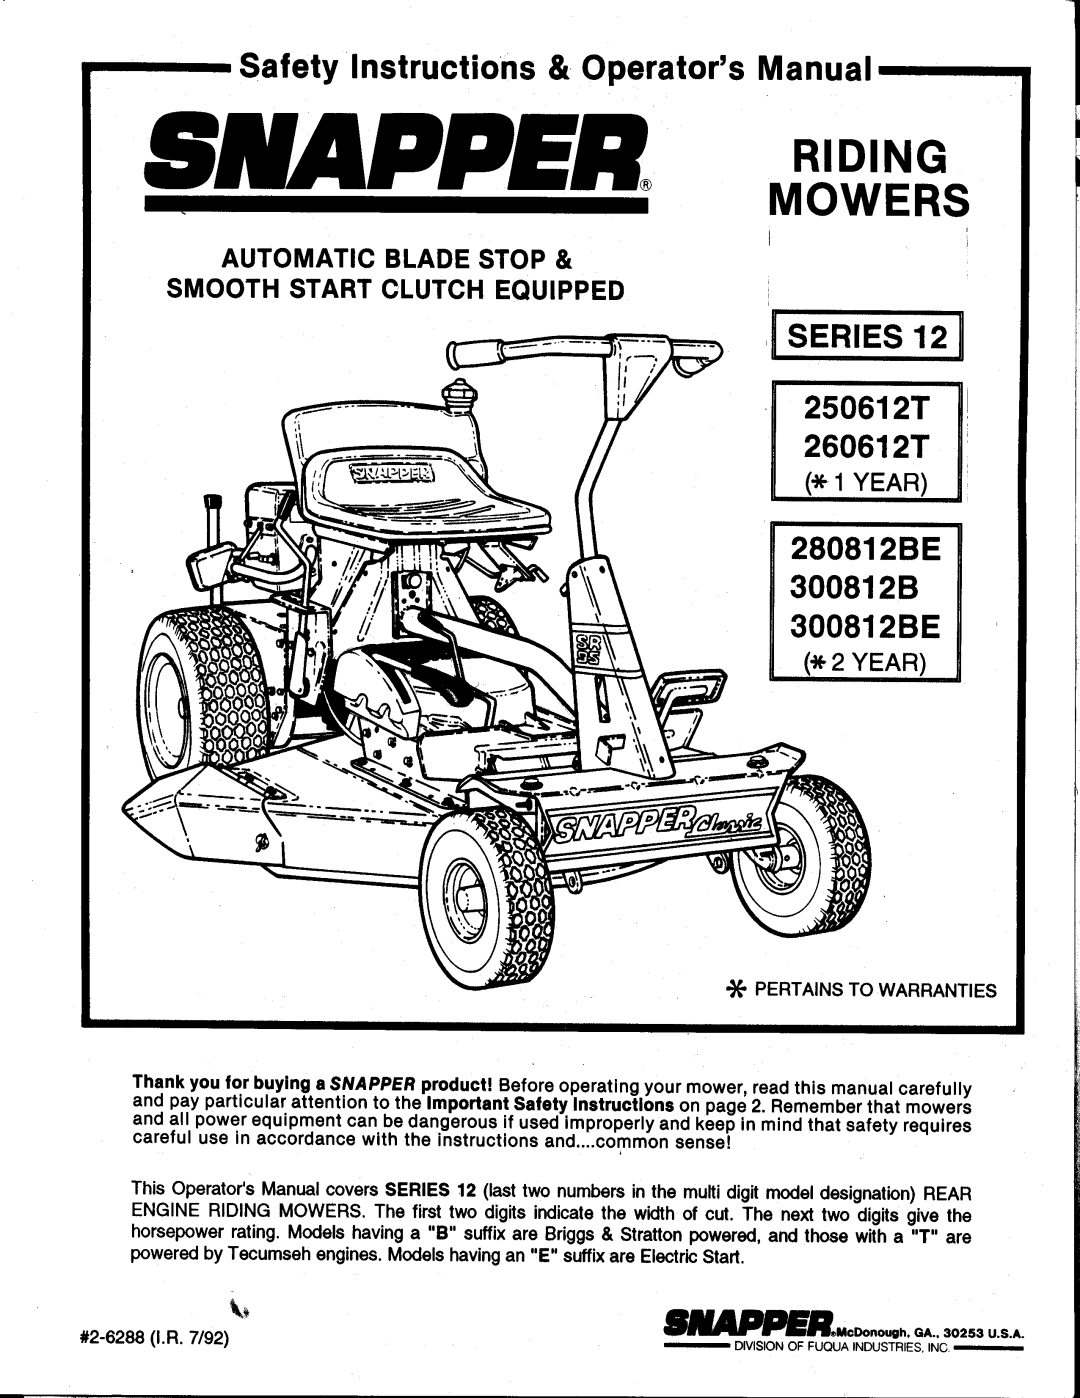 Snapper 250612T manual 